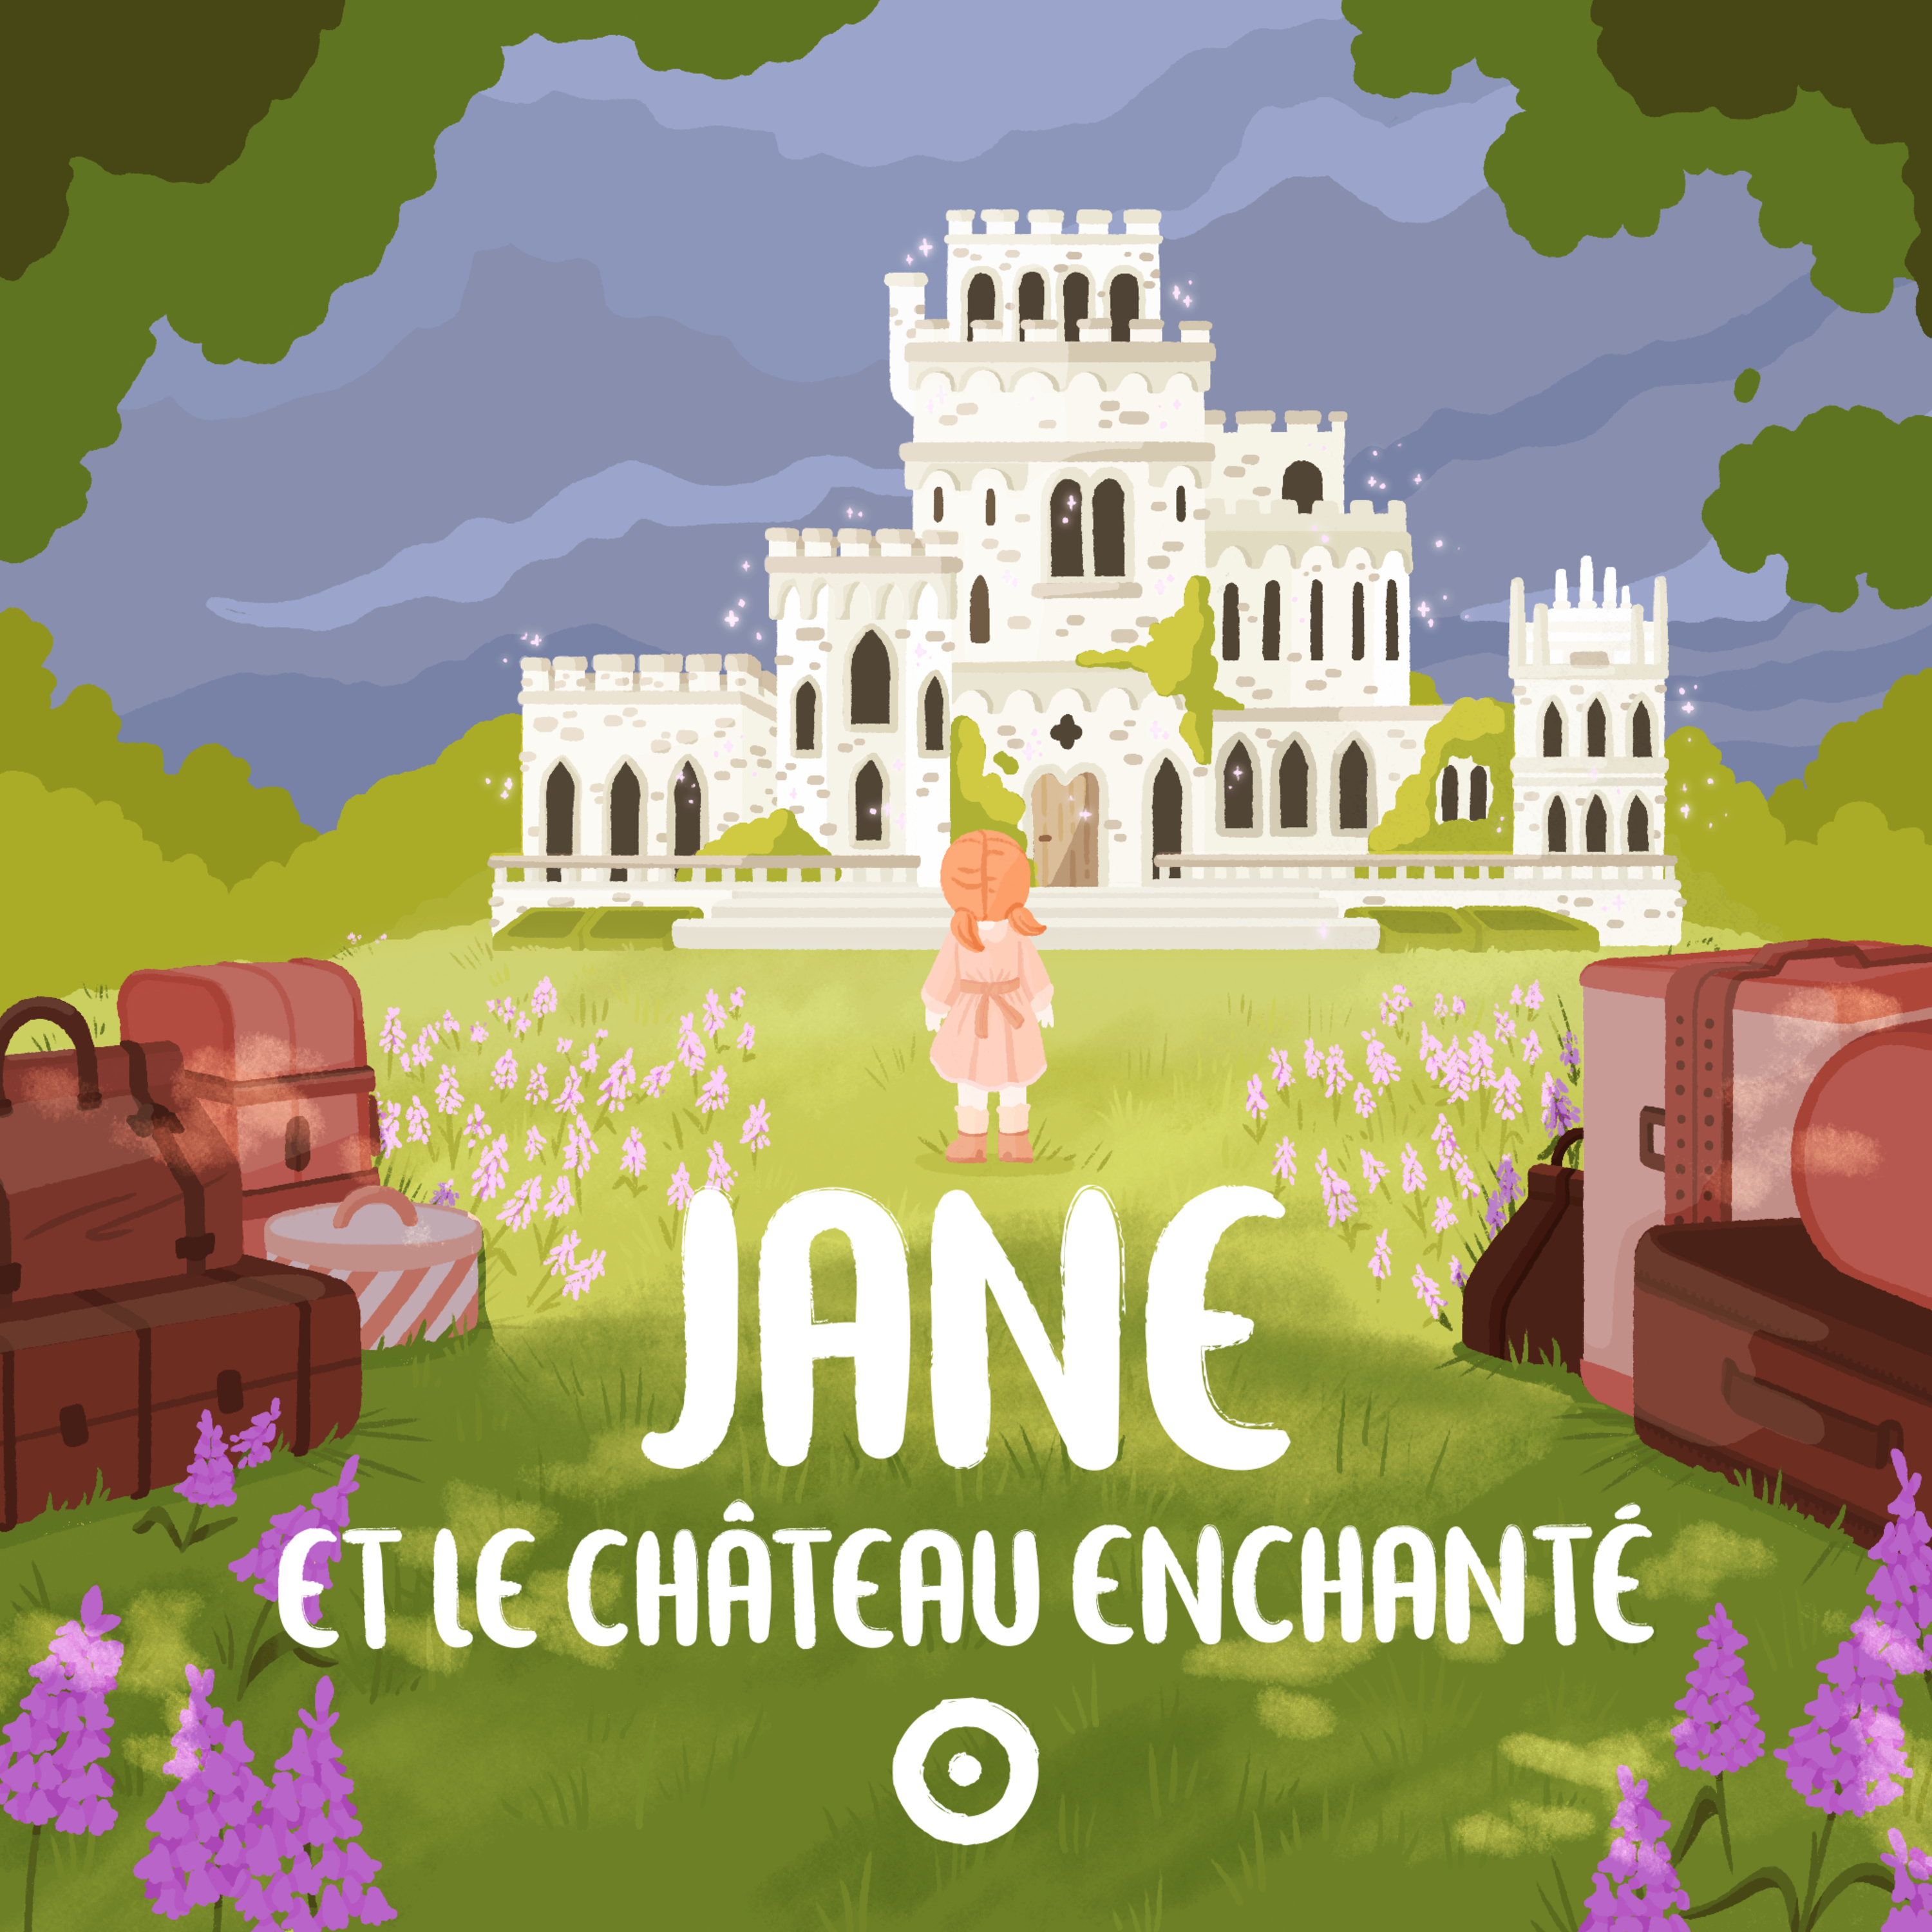 Episode 5 - Jane et le château enchanté - Le passage secret